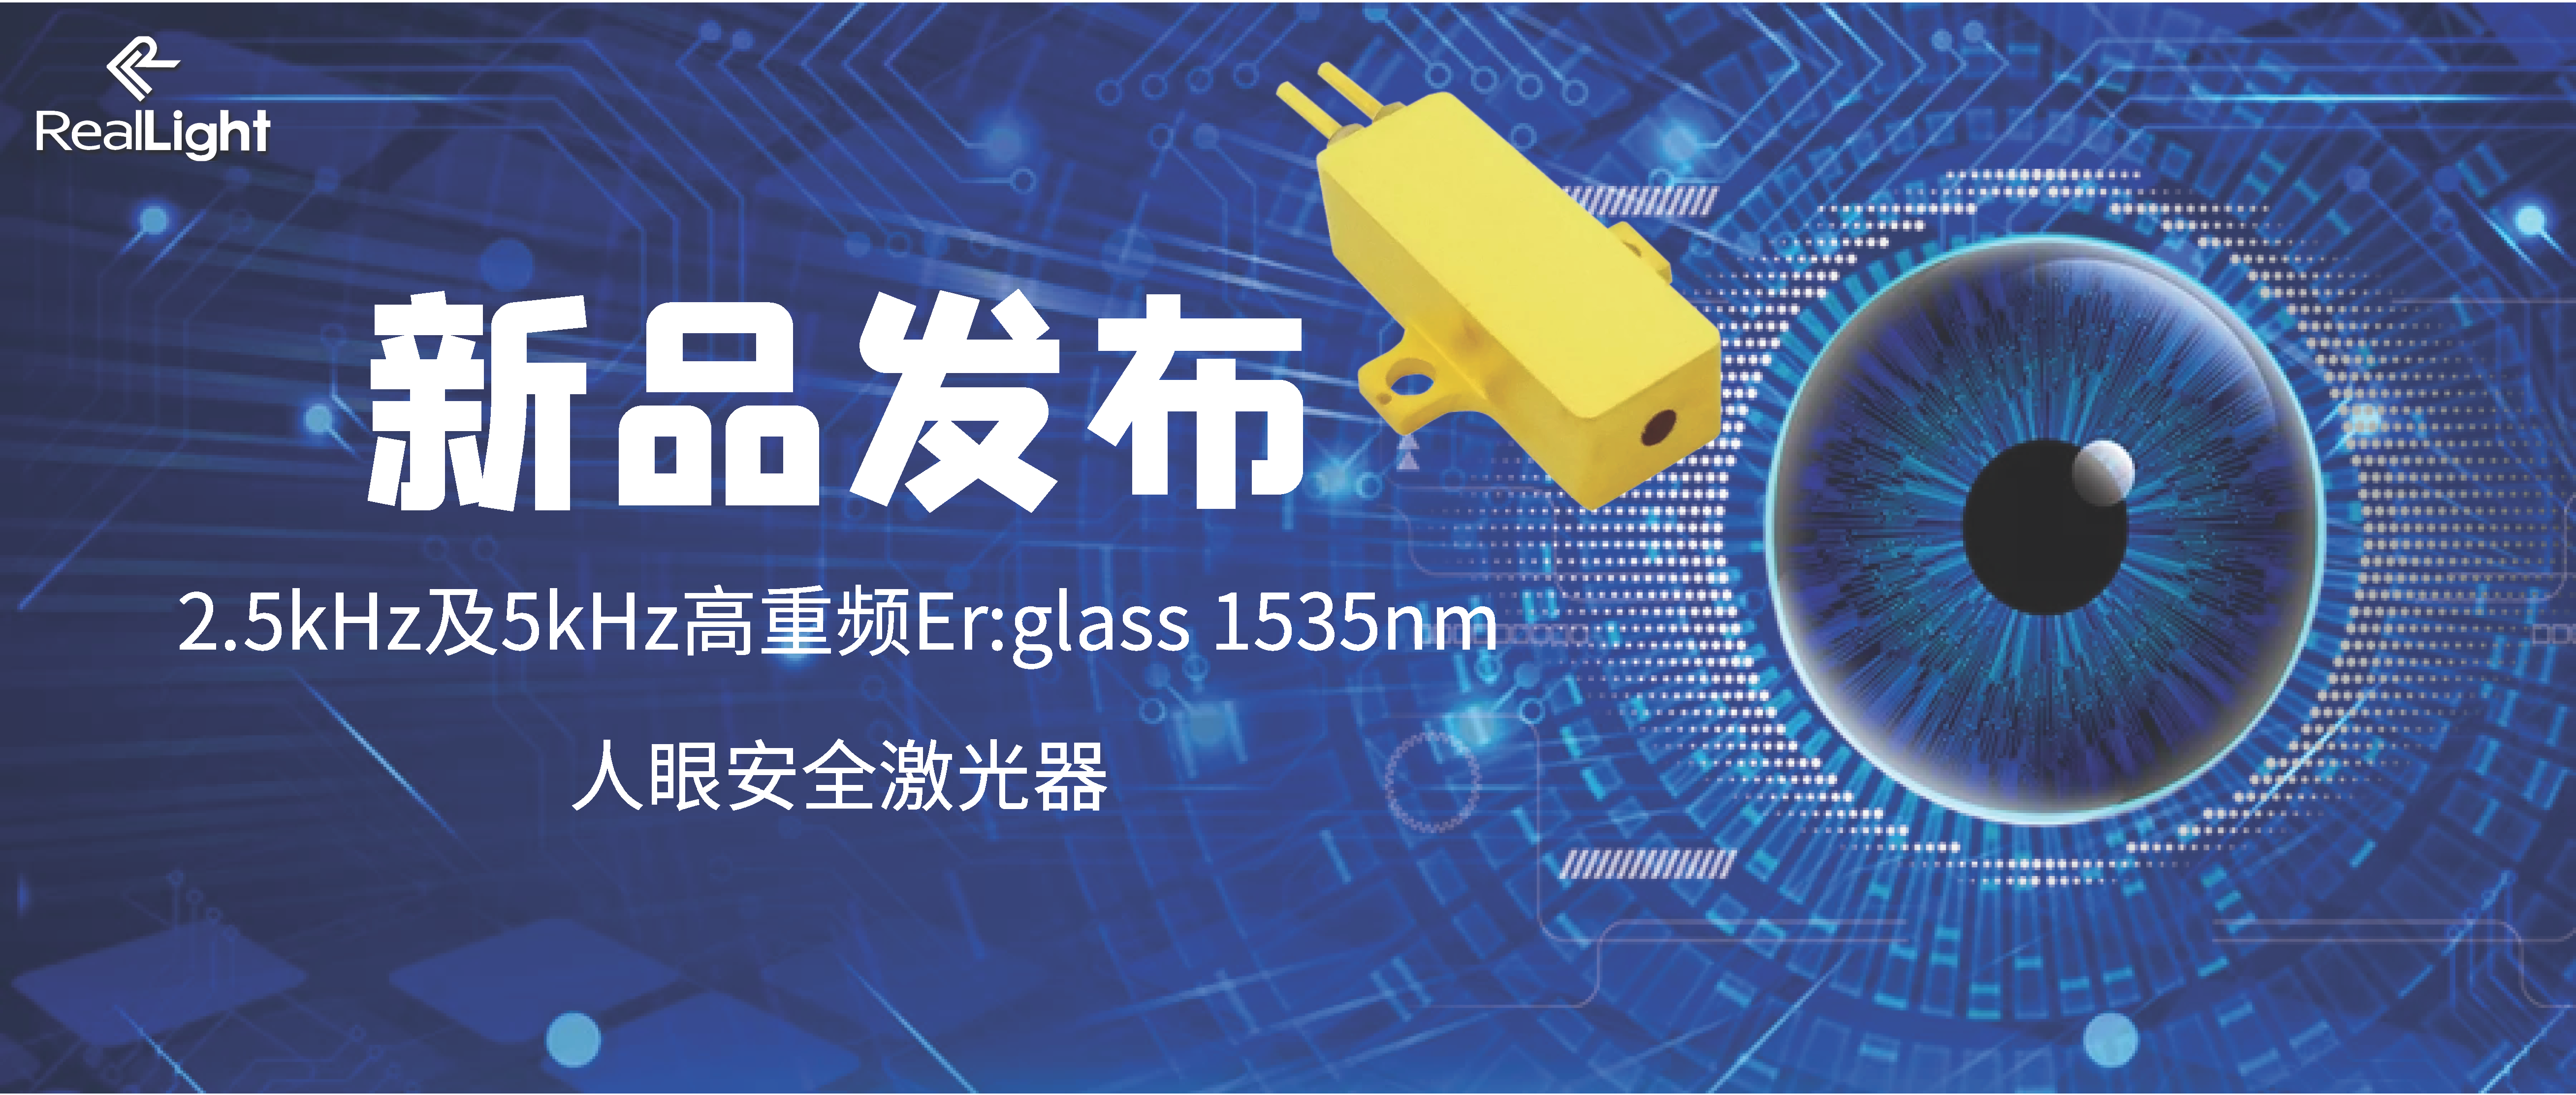 新品宣布：2.5kHz及5kHz高重频Er:glass 1535nm人眼清静激光器